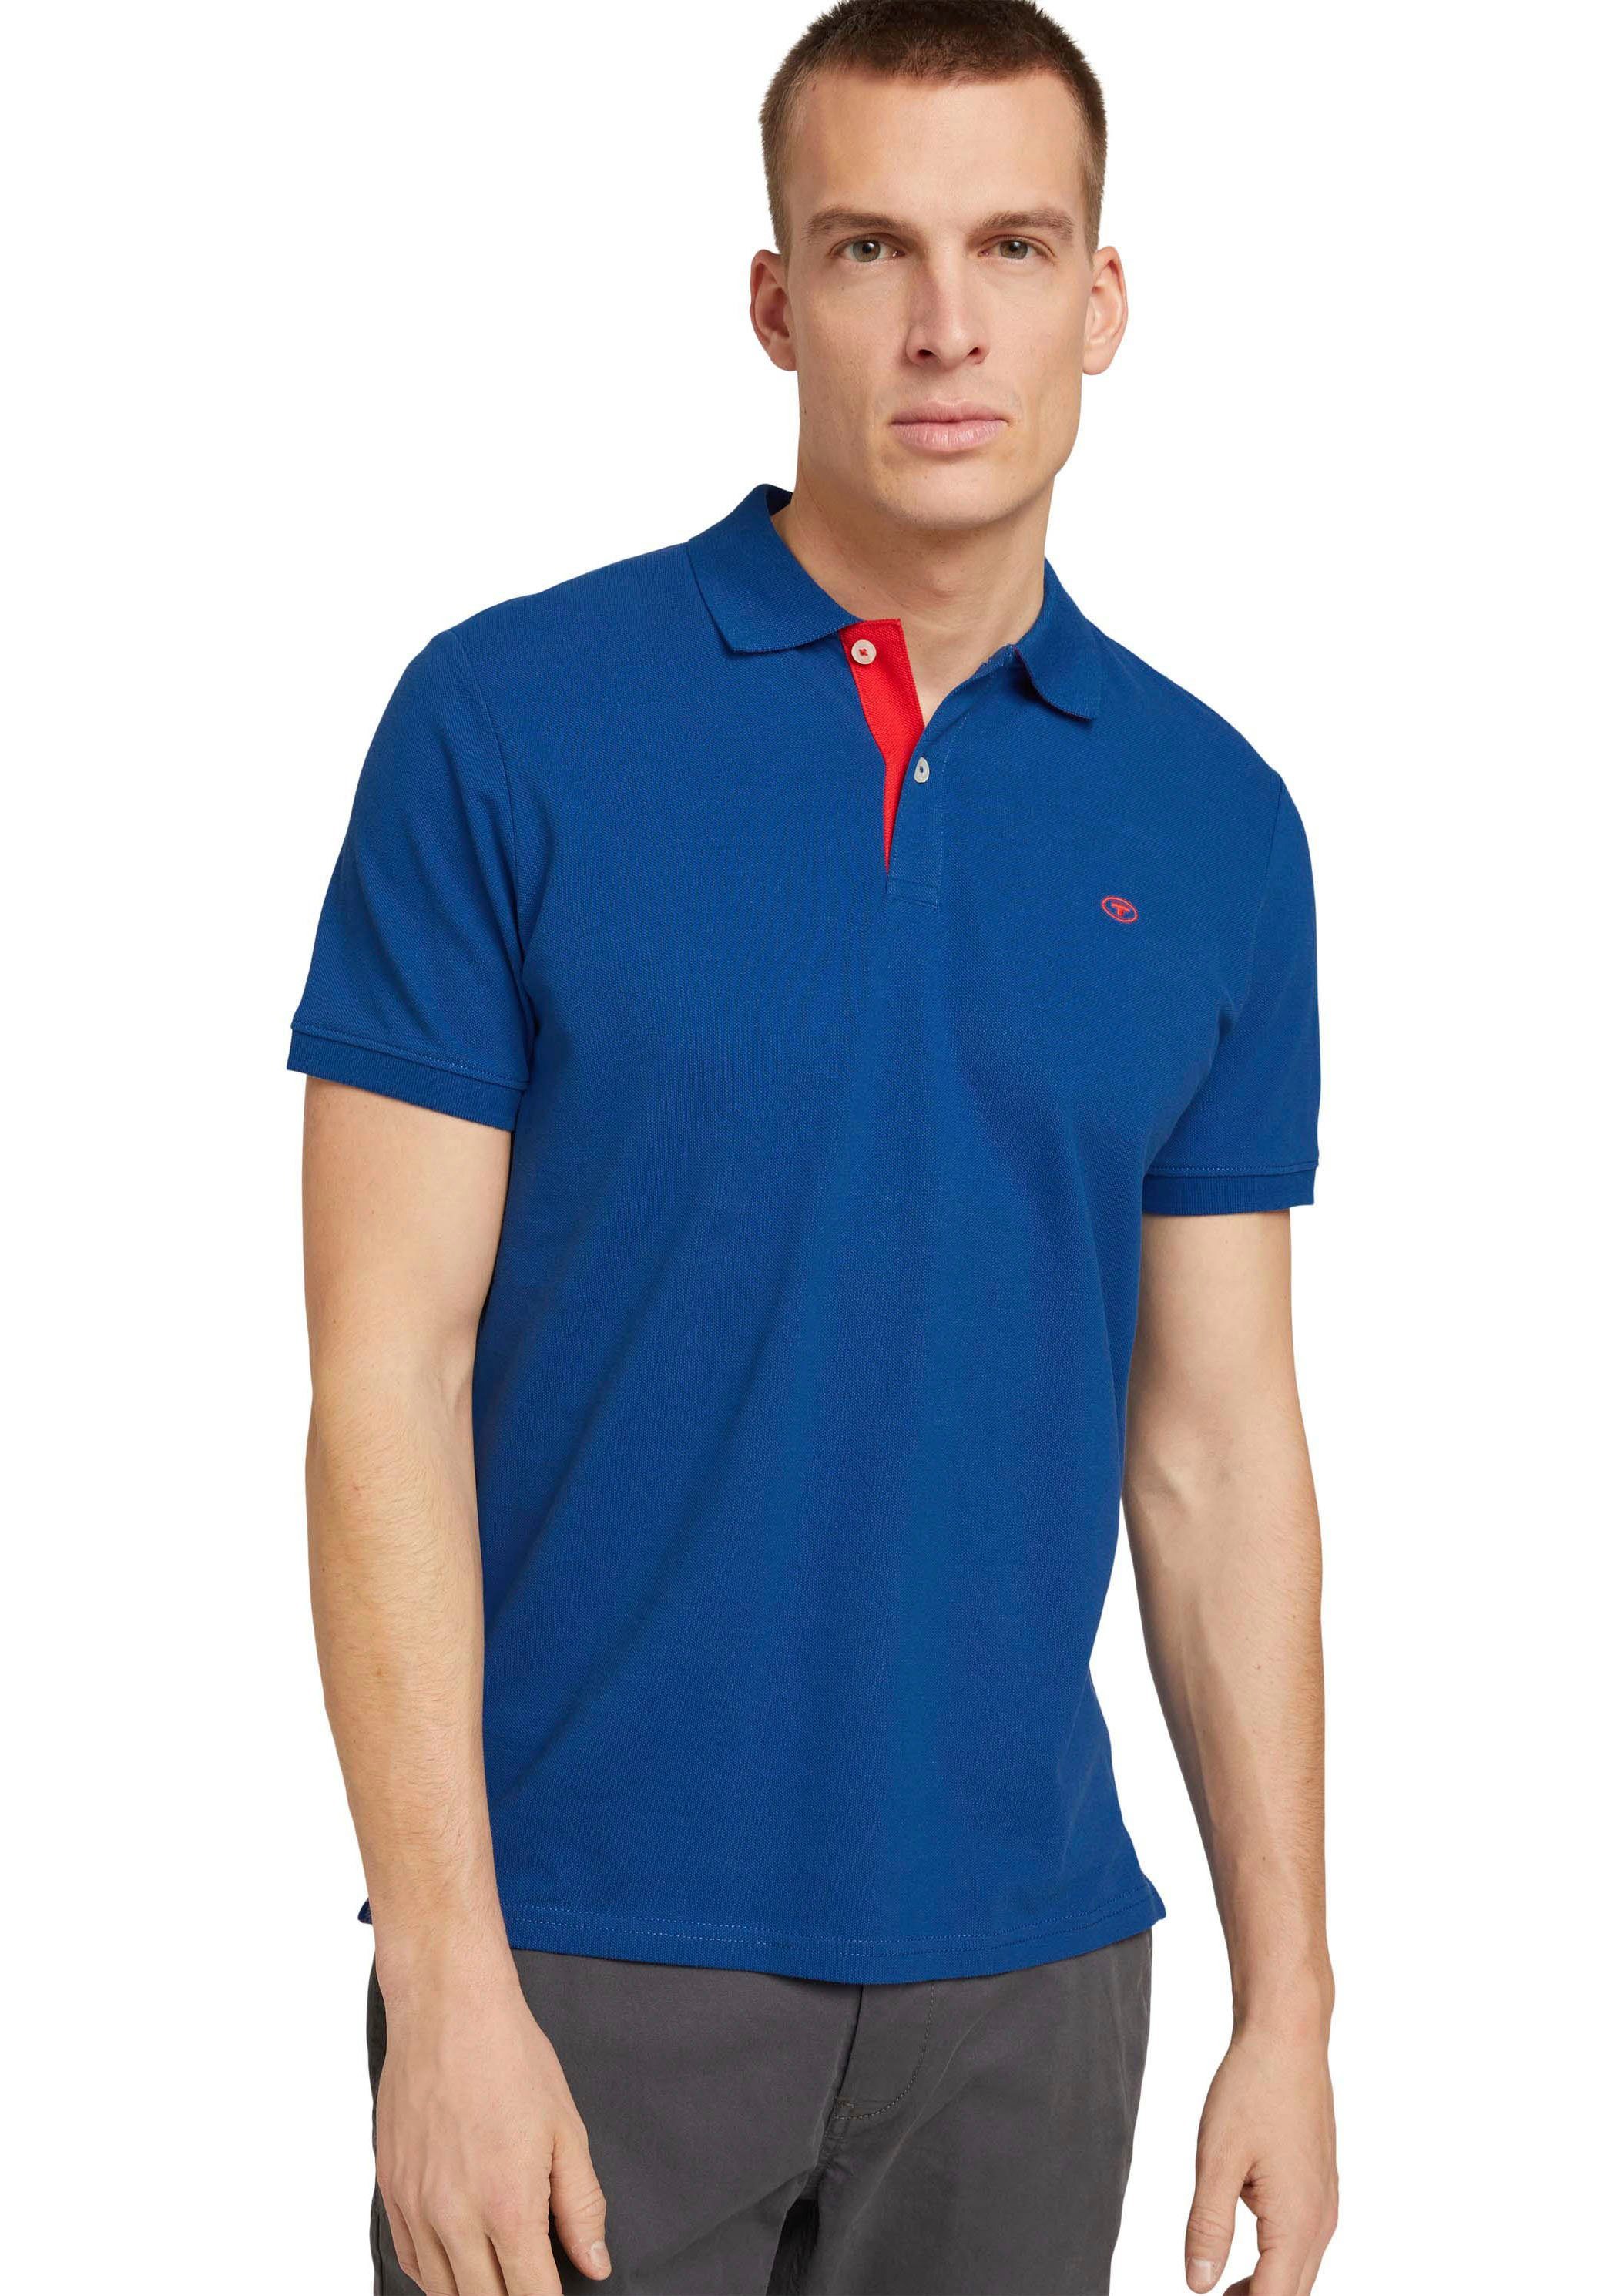 TOM TAILOR Poloshirt mit kontrastfarbener Knopfleiste und kleinem Logo stahlblau